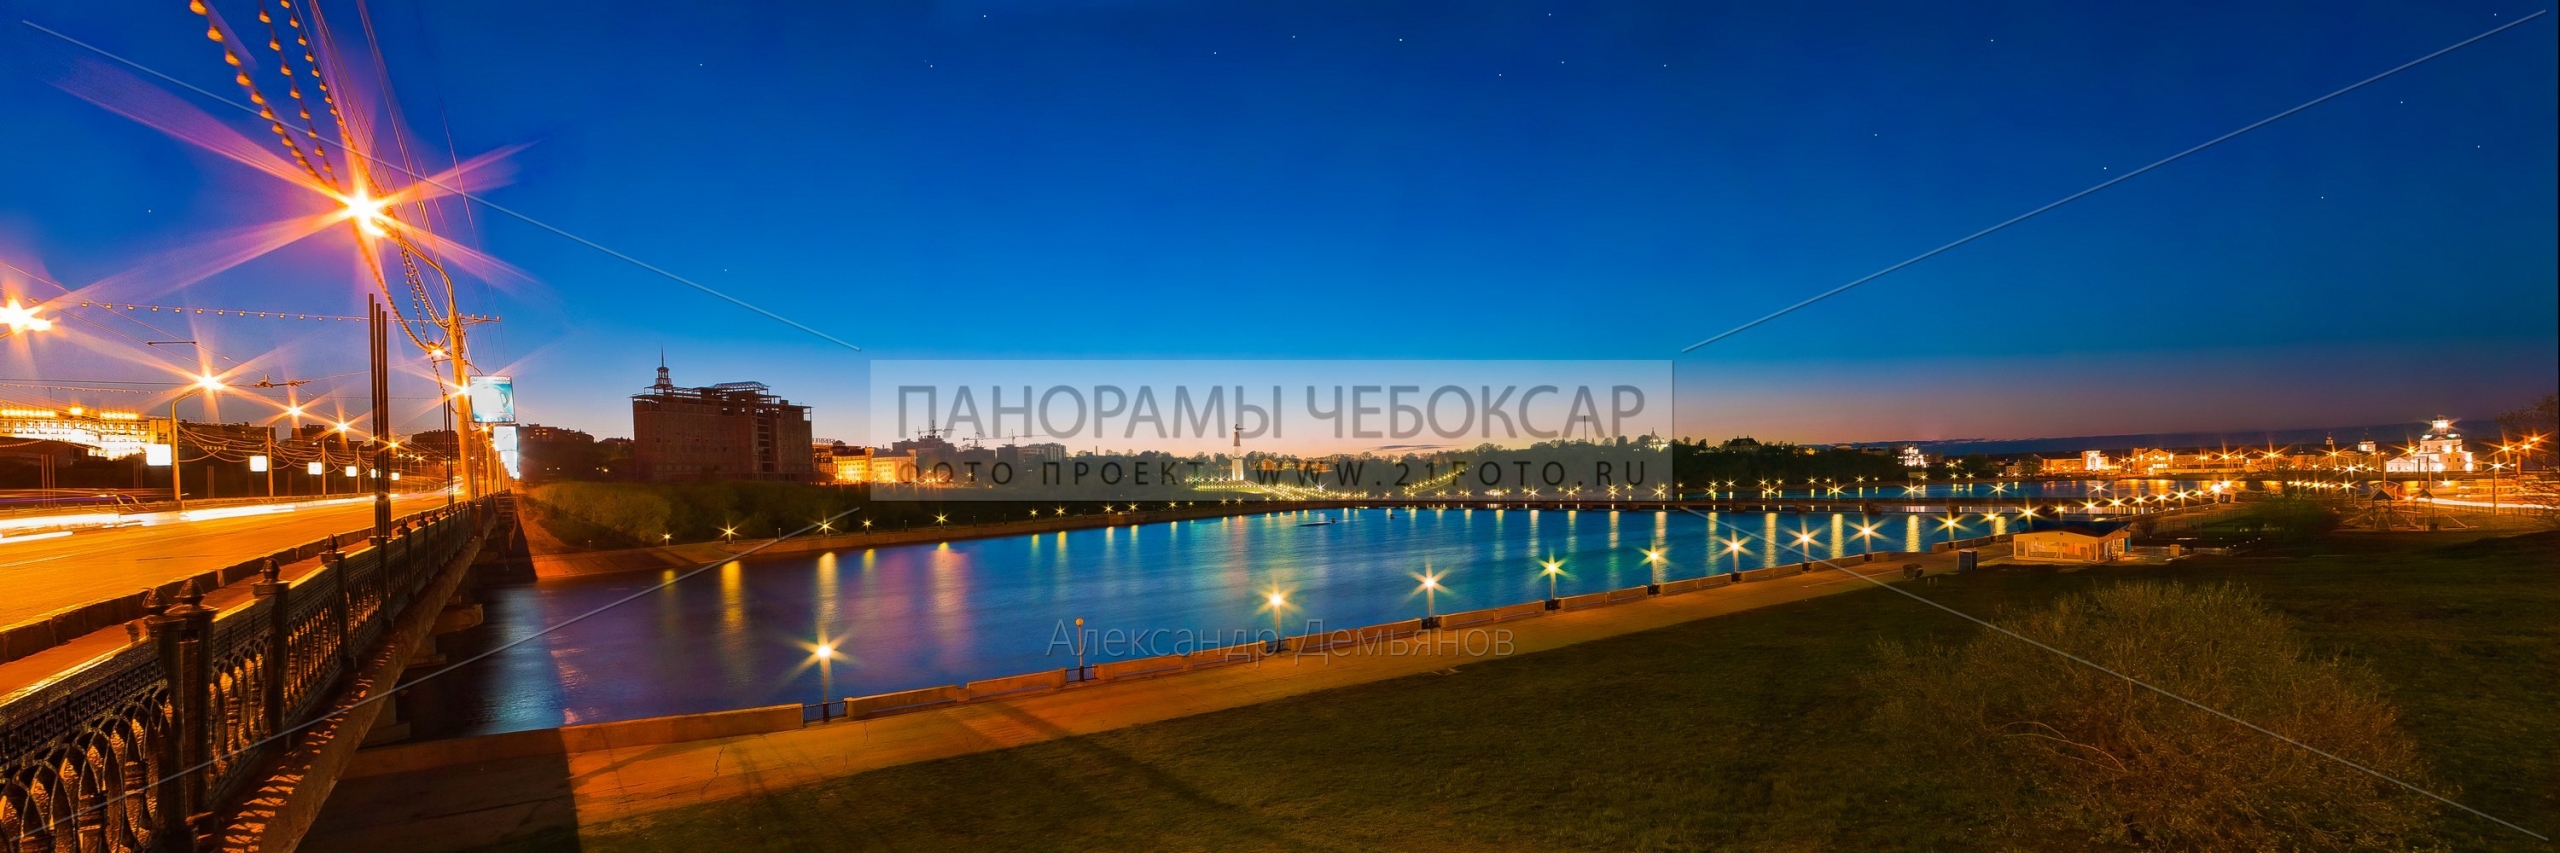 Ночная Фотография с Московского Моста и залива в городе Чебоксары